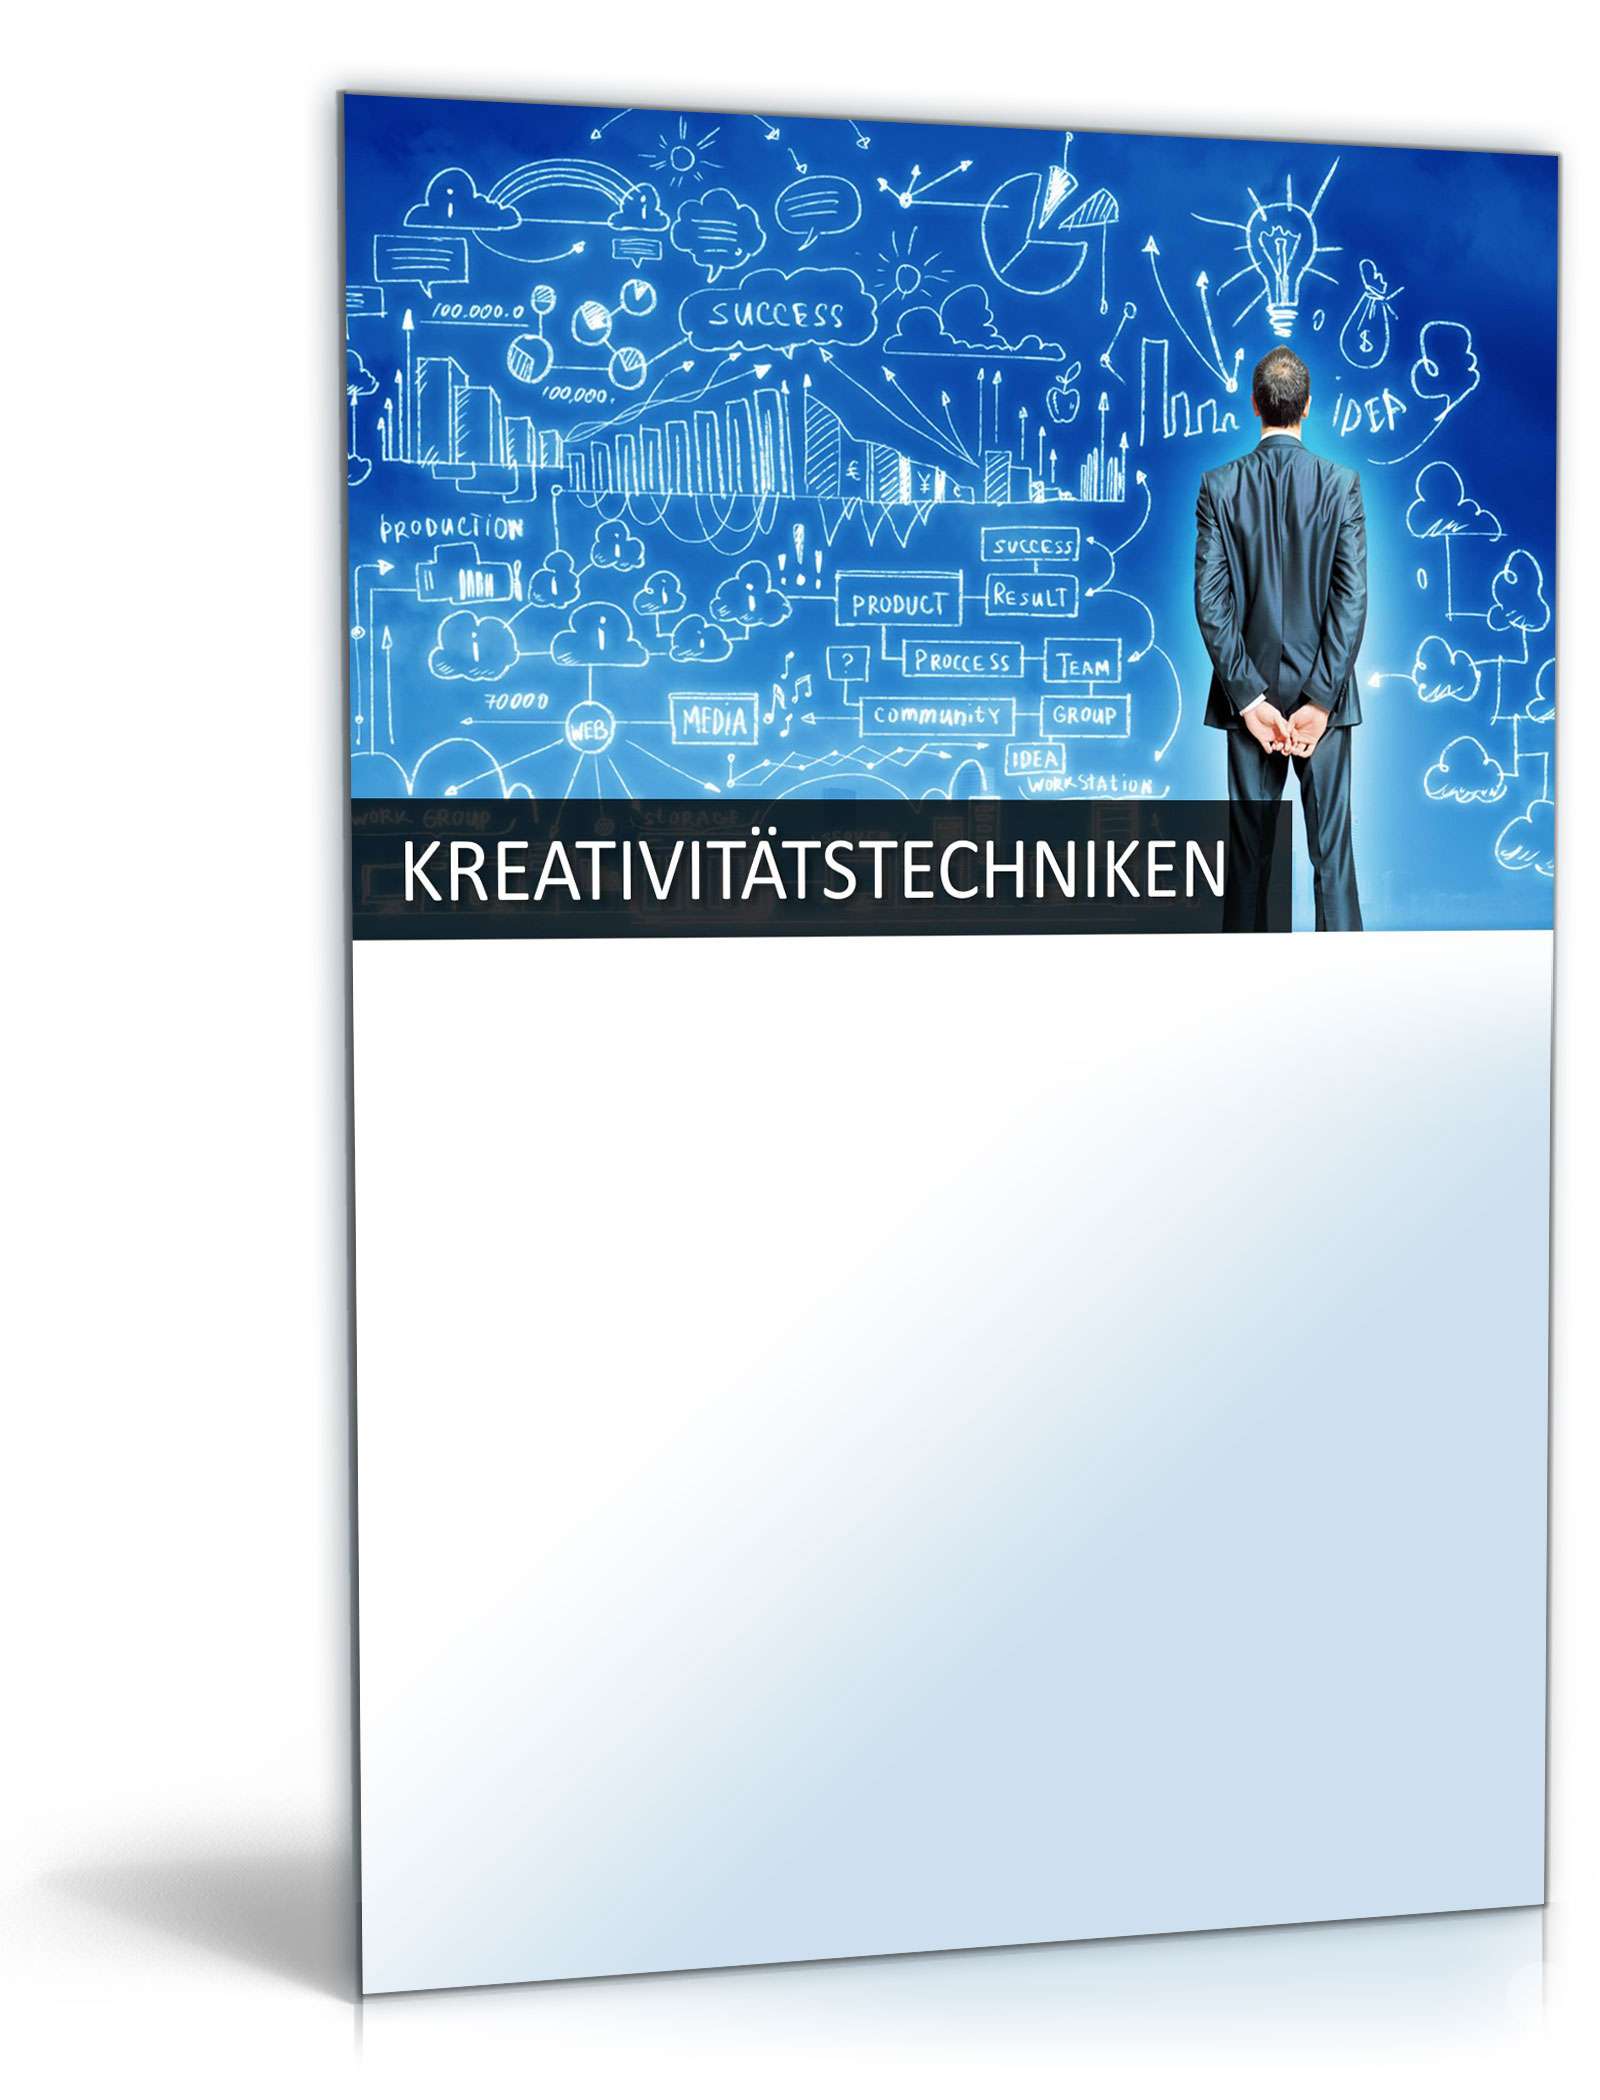 Hauptbild des Produkts: PowerPoint-Vorlage Kreativitätstechniken